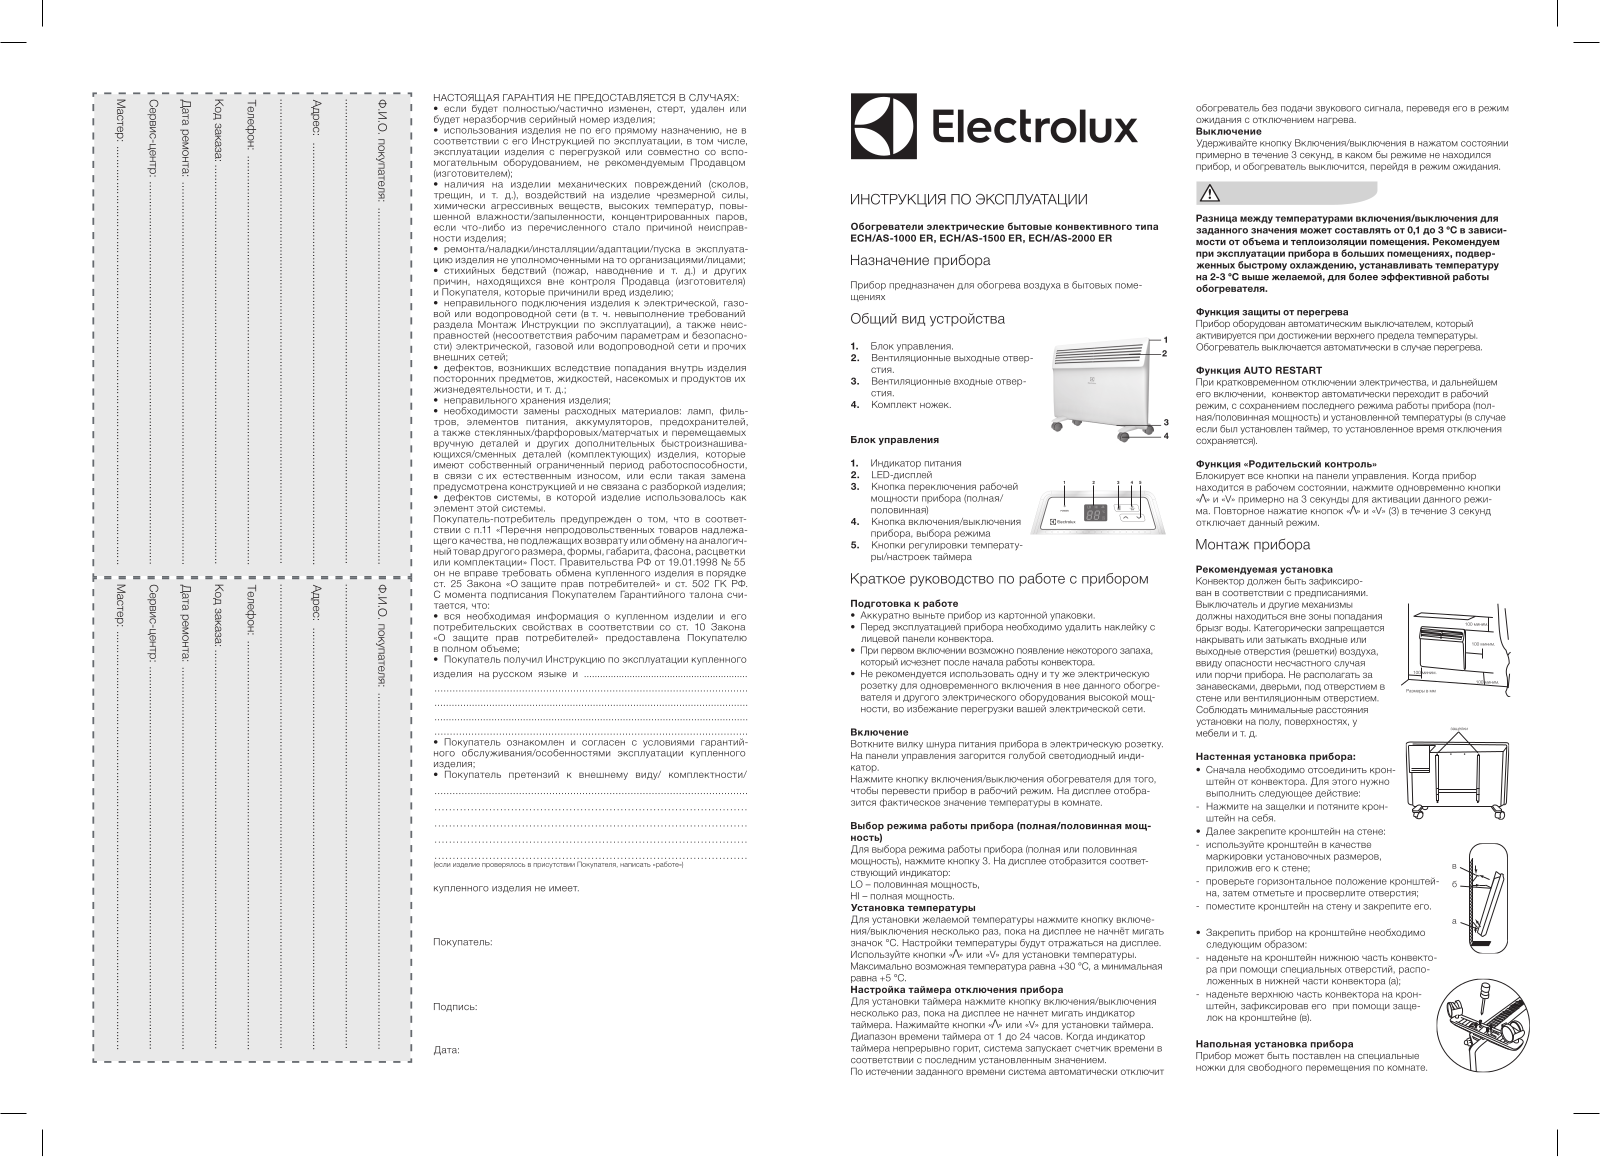 Electrolux ECH/AS-1500 User Manual